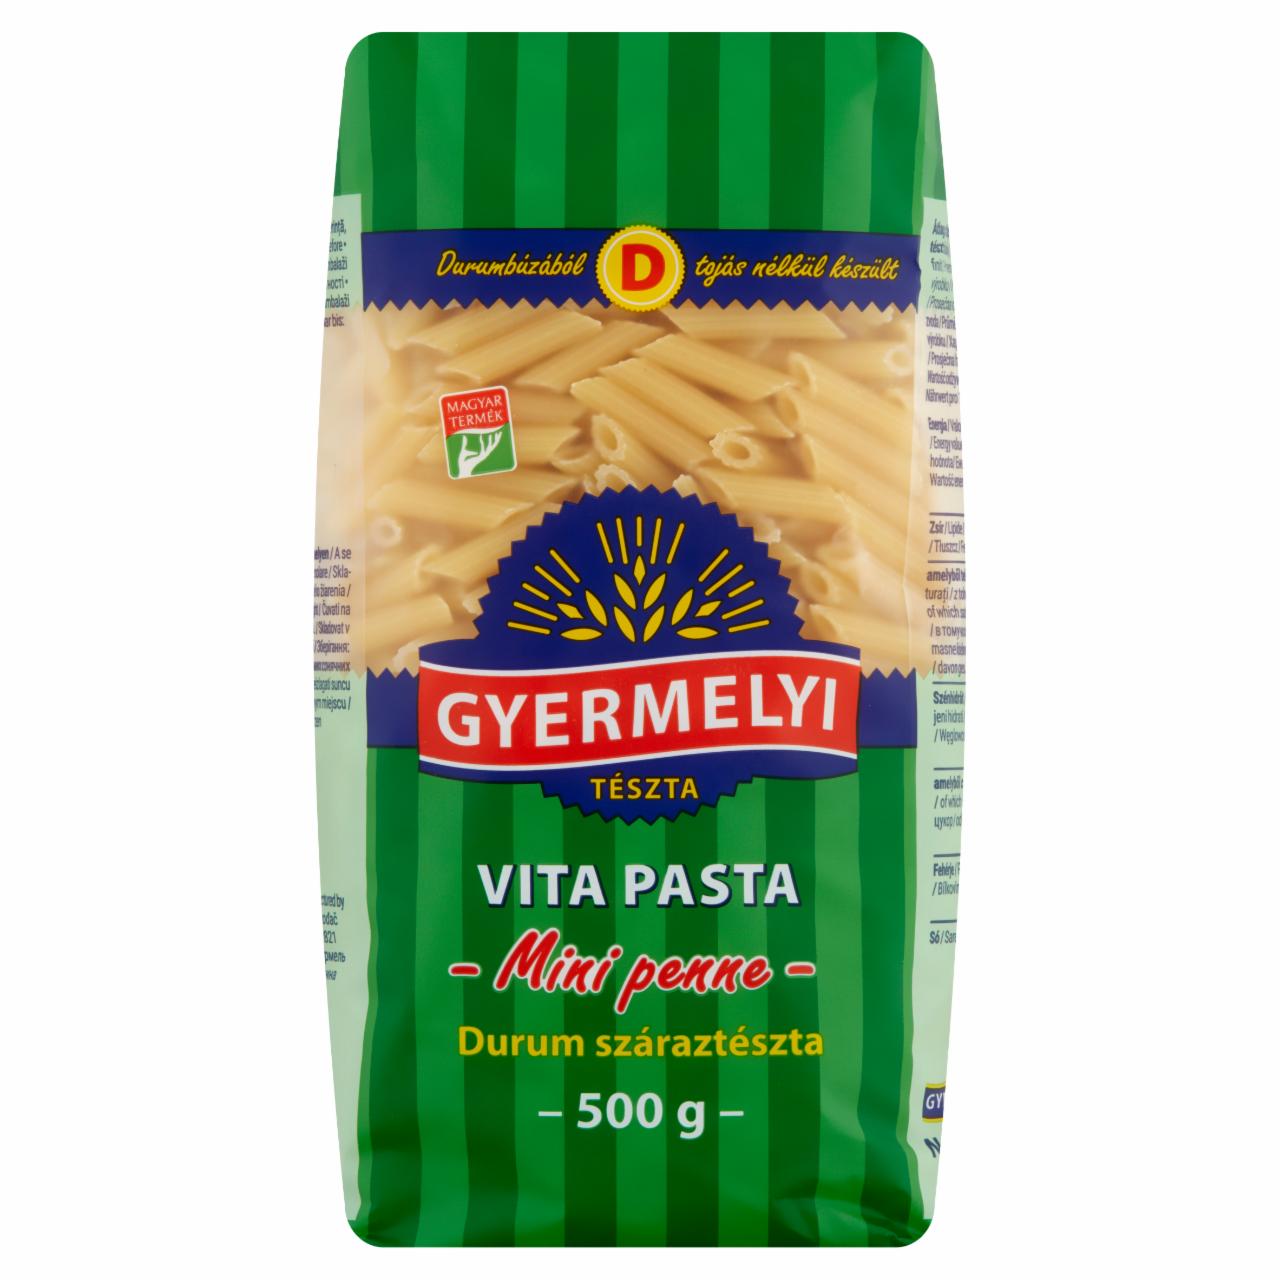 Képek - Gyermelyi Vita Pasta Mini penne durum száraztészta 500 g